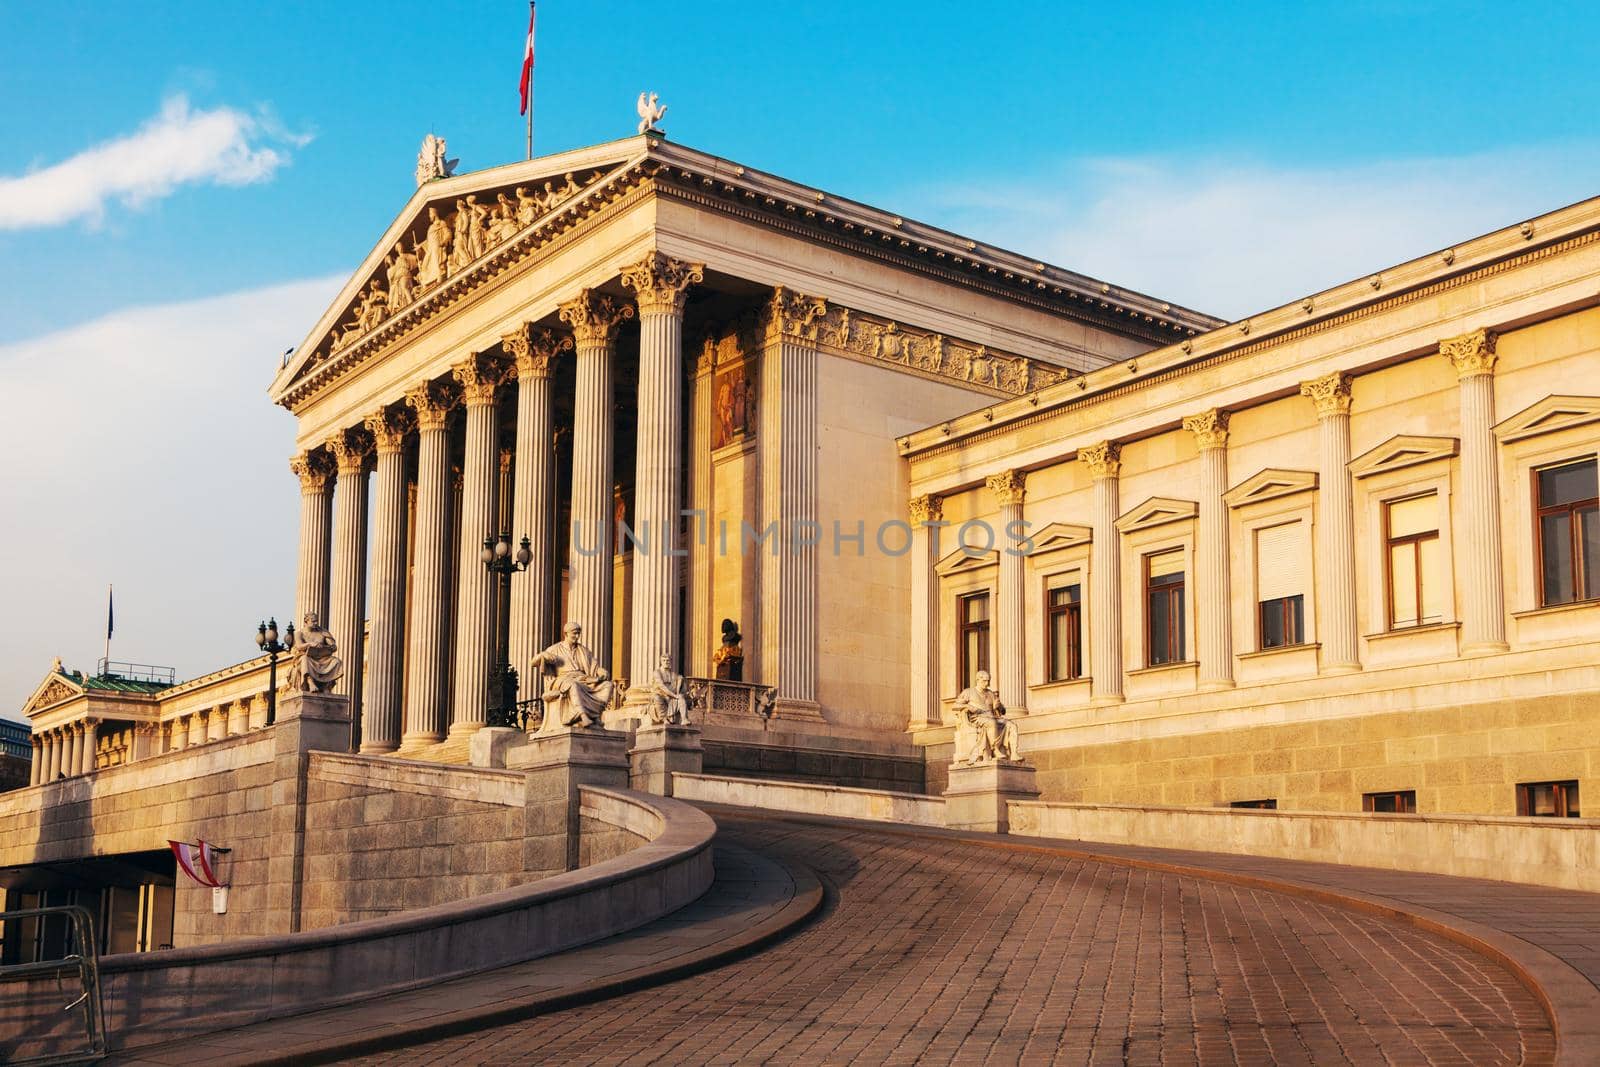 Parliament of Austria in Vienna by benkrut